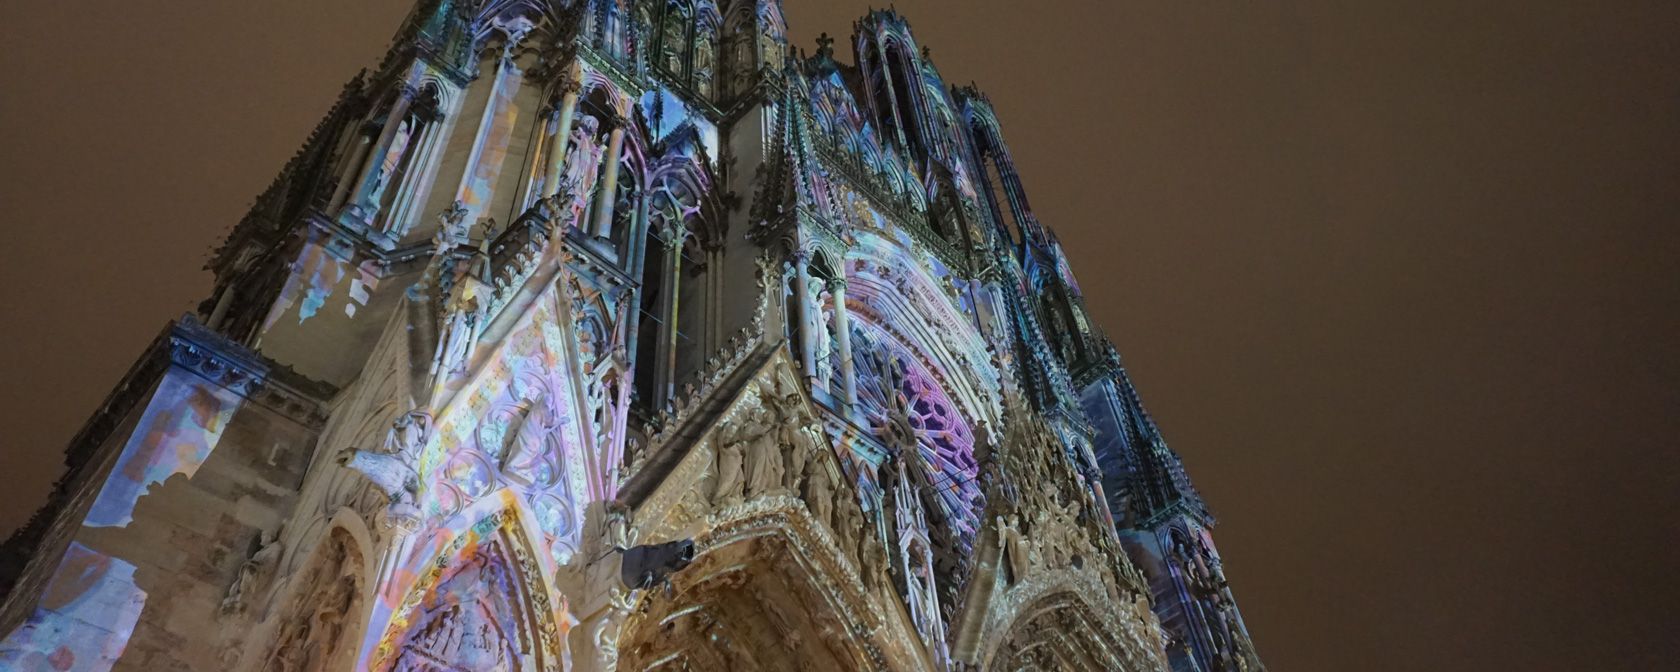 Kathedrale von Reims. Foto: Champagner-club.de